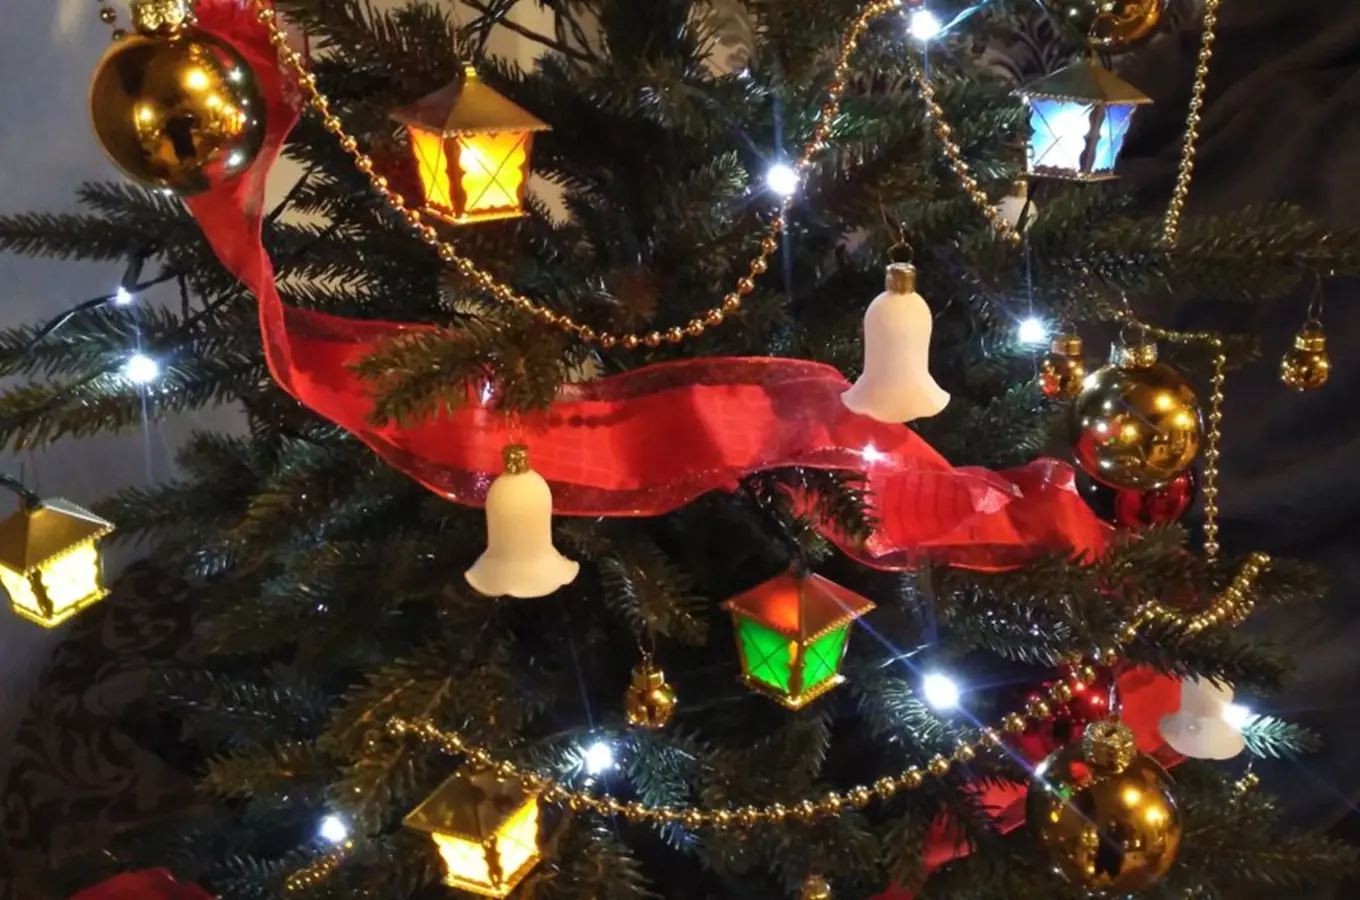 Tradiční vánoční lucerničky na stromeček – návrat starých ozdob